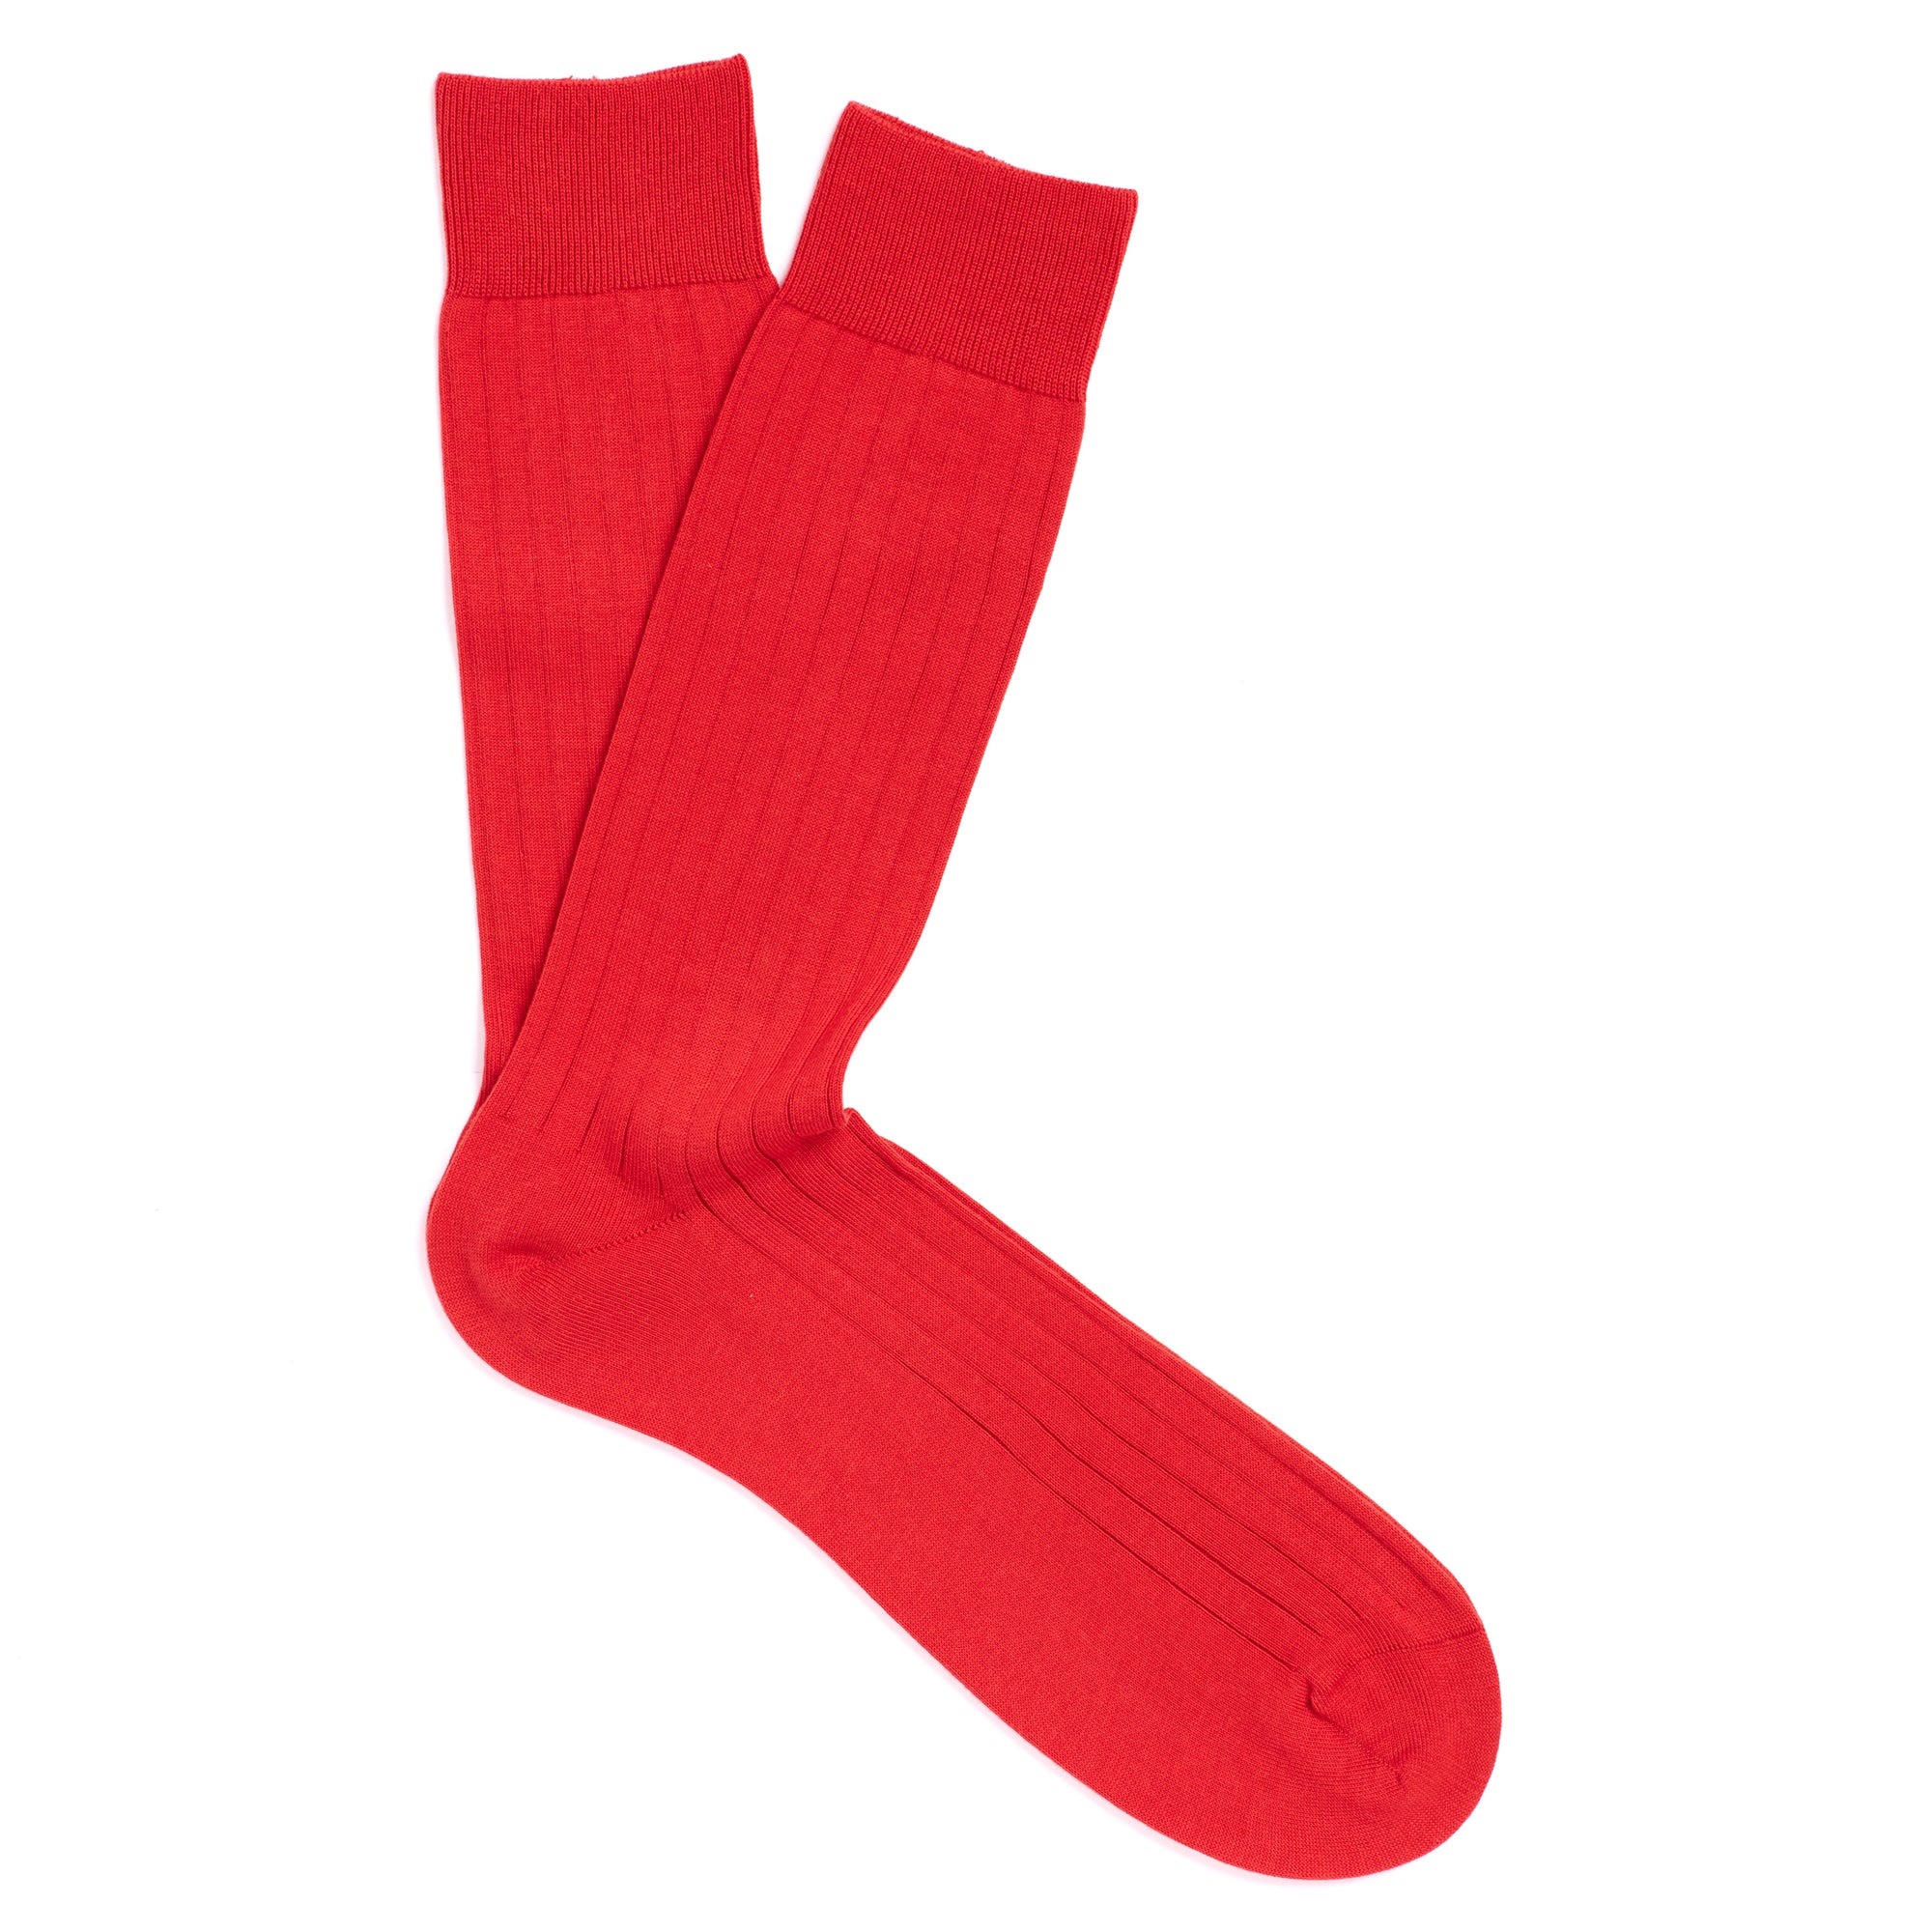 Solespun Sea Island Cotton Socks in Red